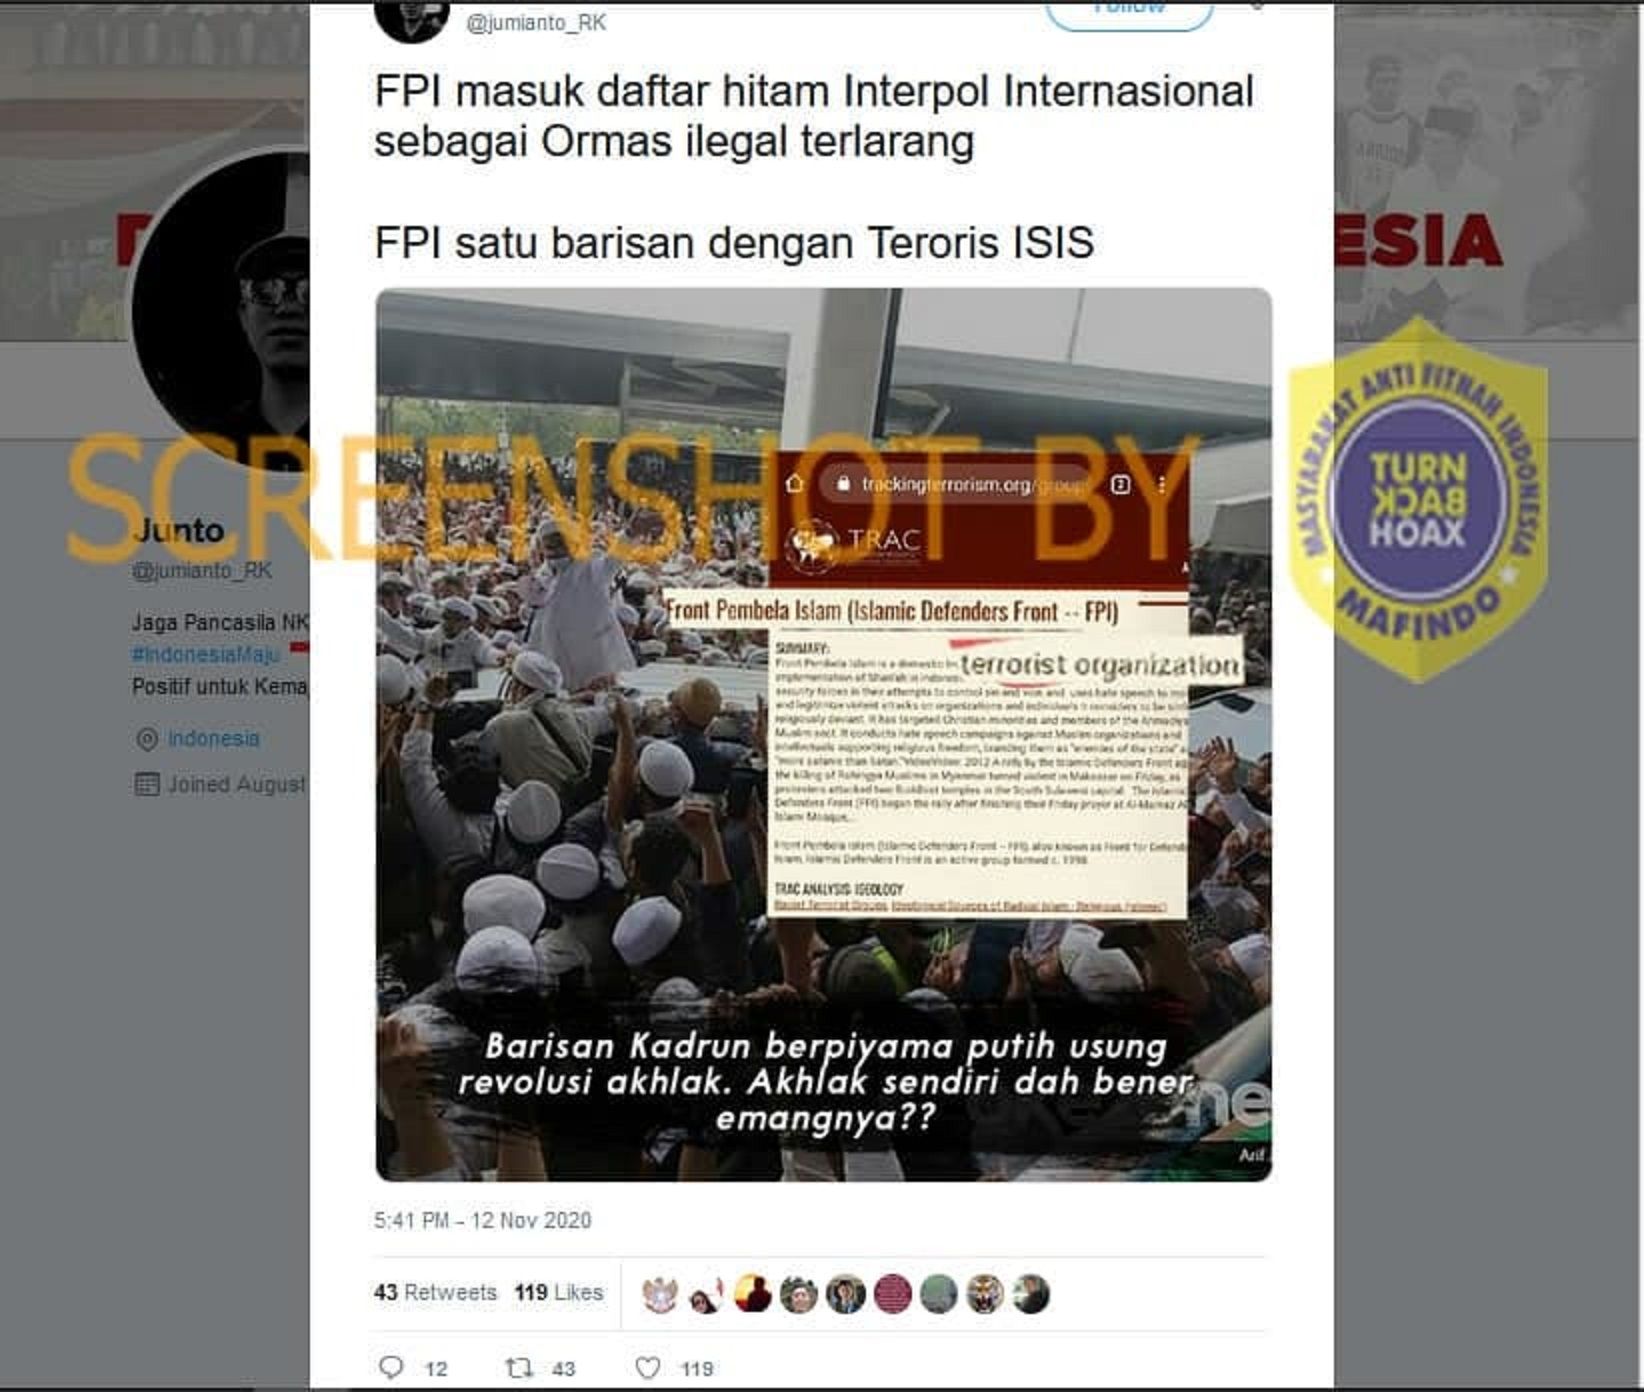 Tangkap layar akun Twitter yang mengklaim bahwa FPI masuk daftar hitam Interpol sebagai ormas ilegal dan terlarang.